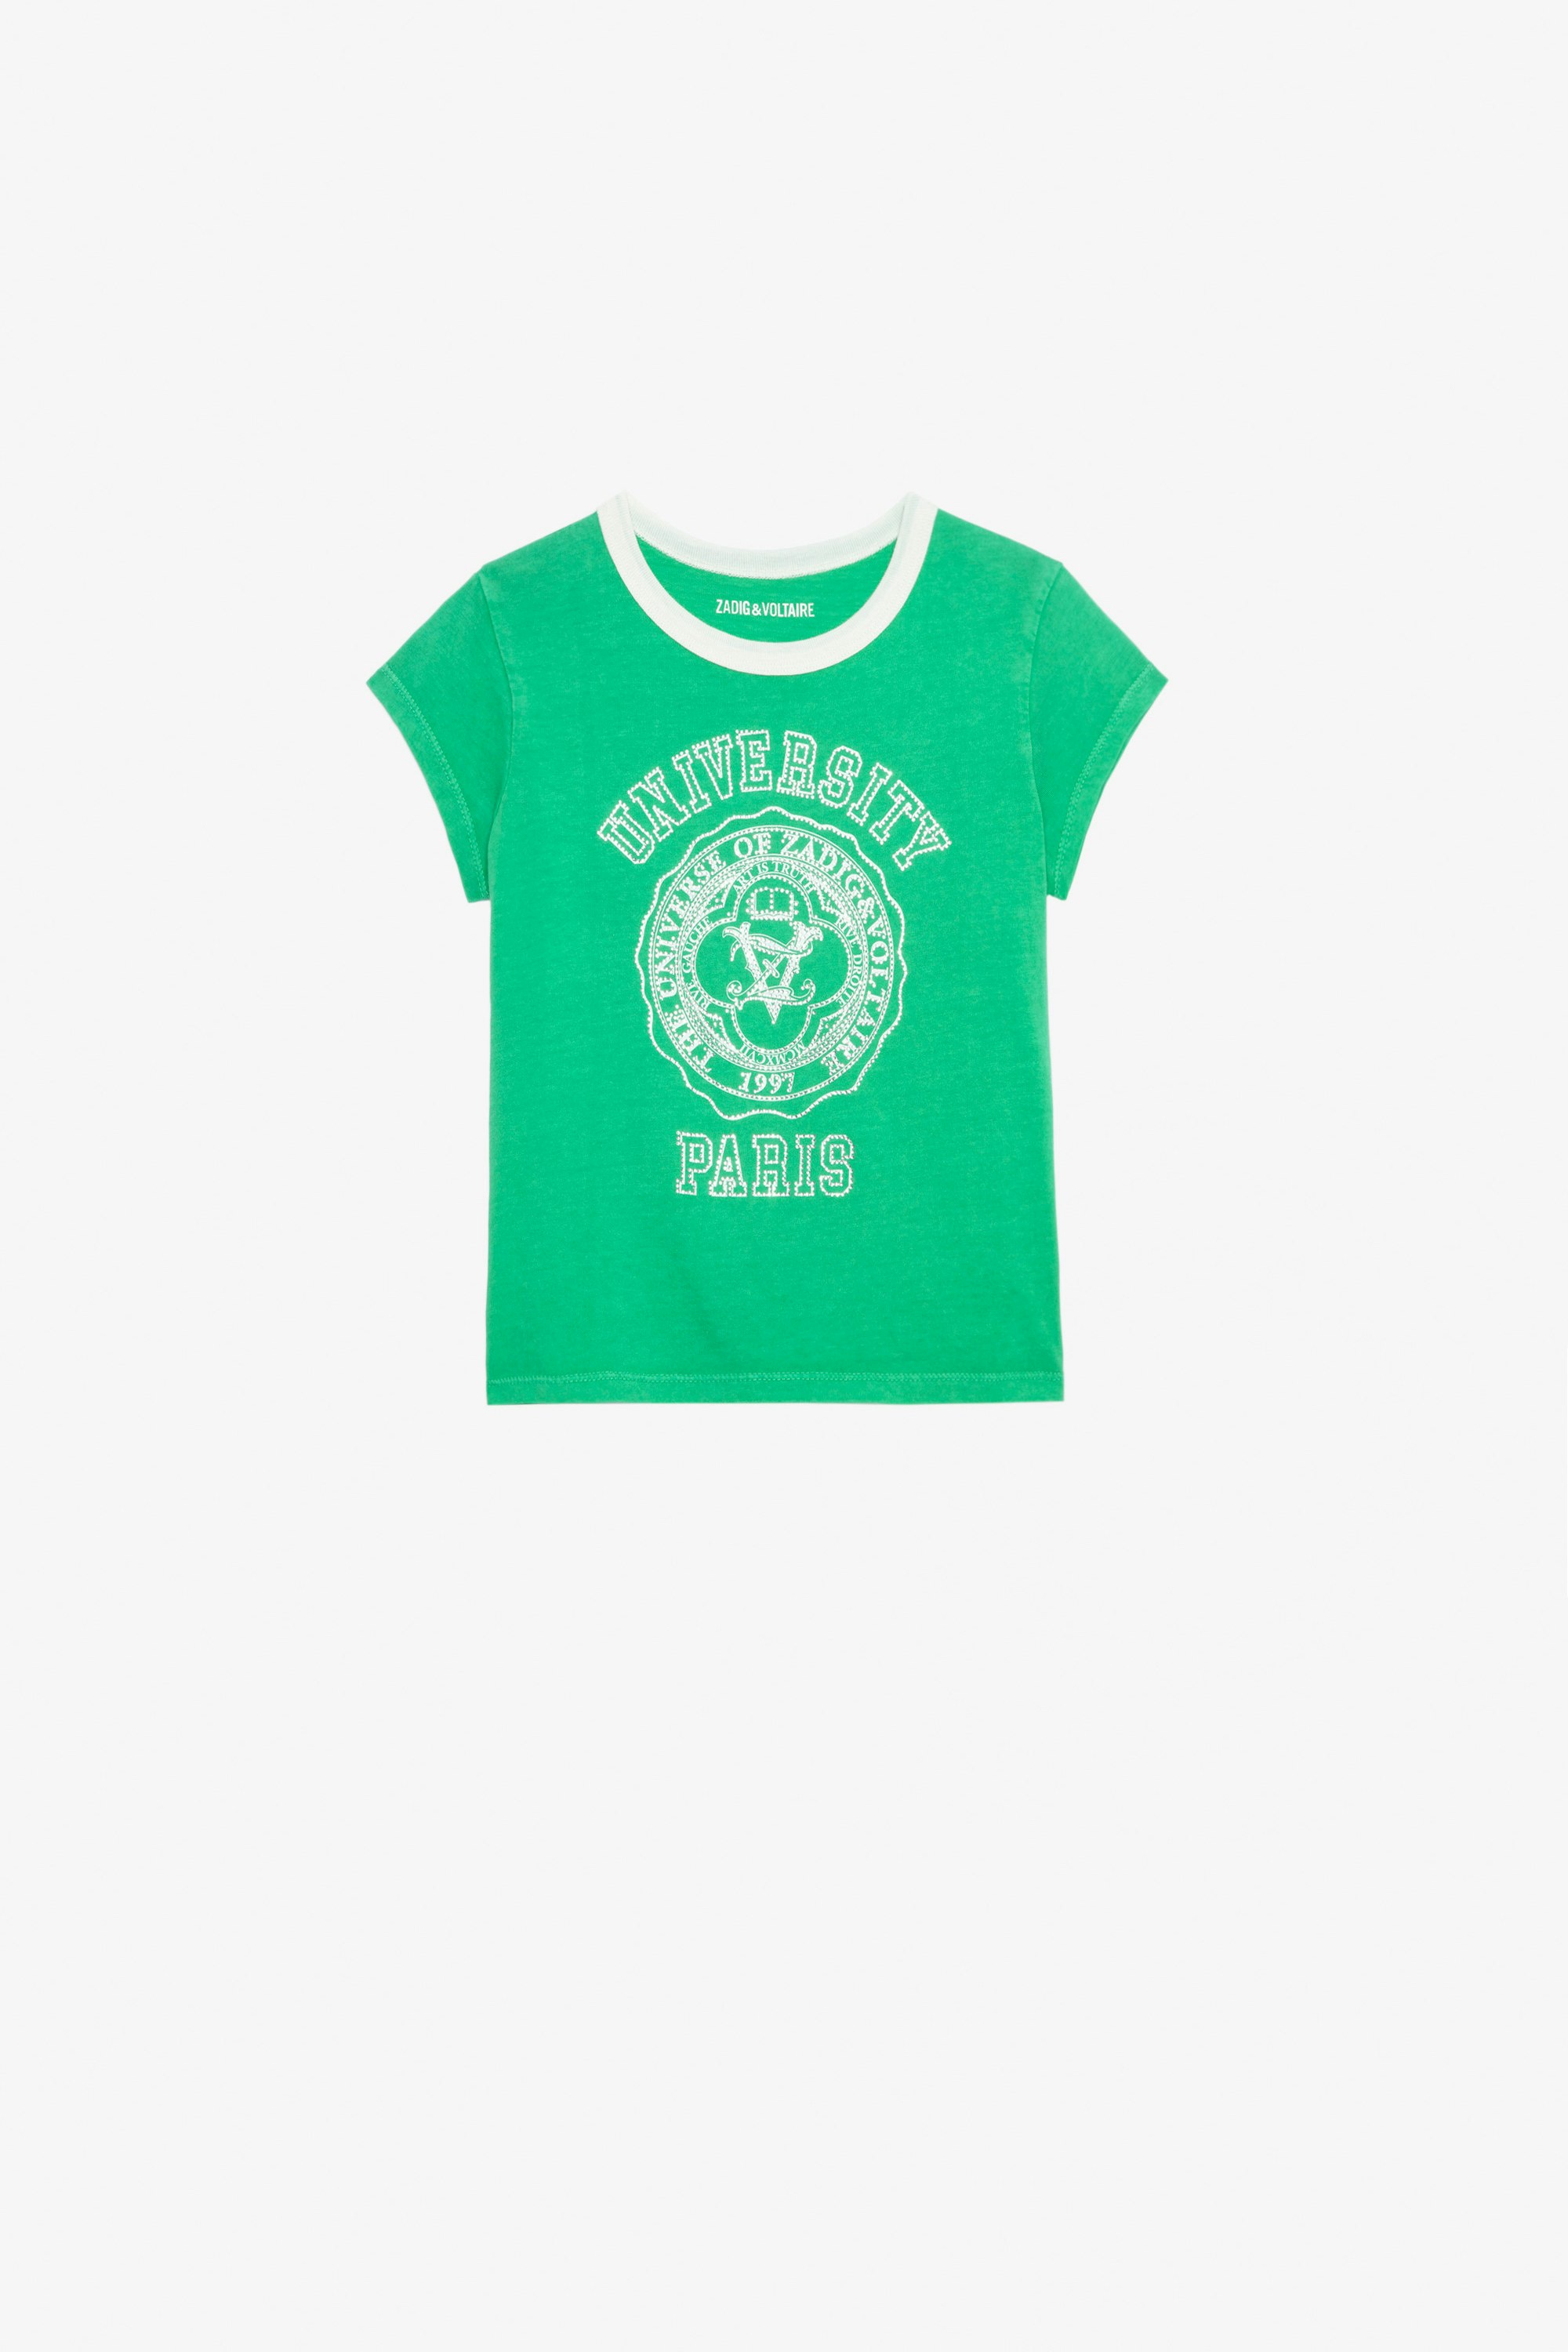 Niels Girls’ T-Shirt Girls’ green short-sleeved cotton jersey T-shirt with diamanté and université motif.